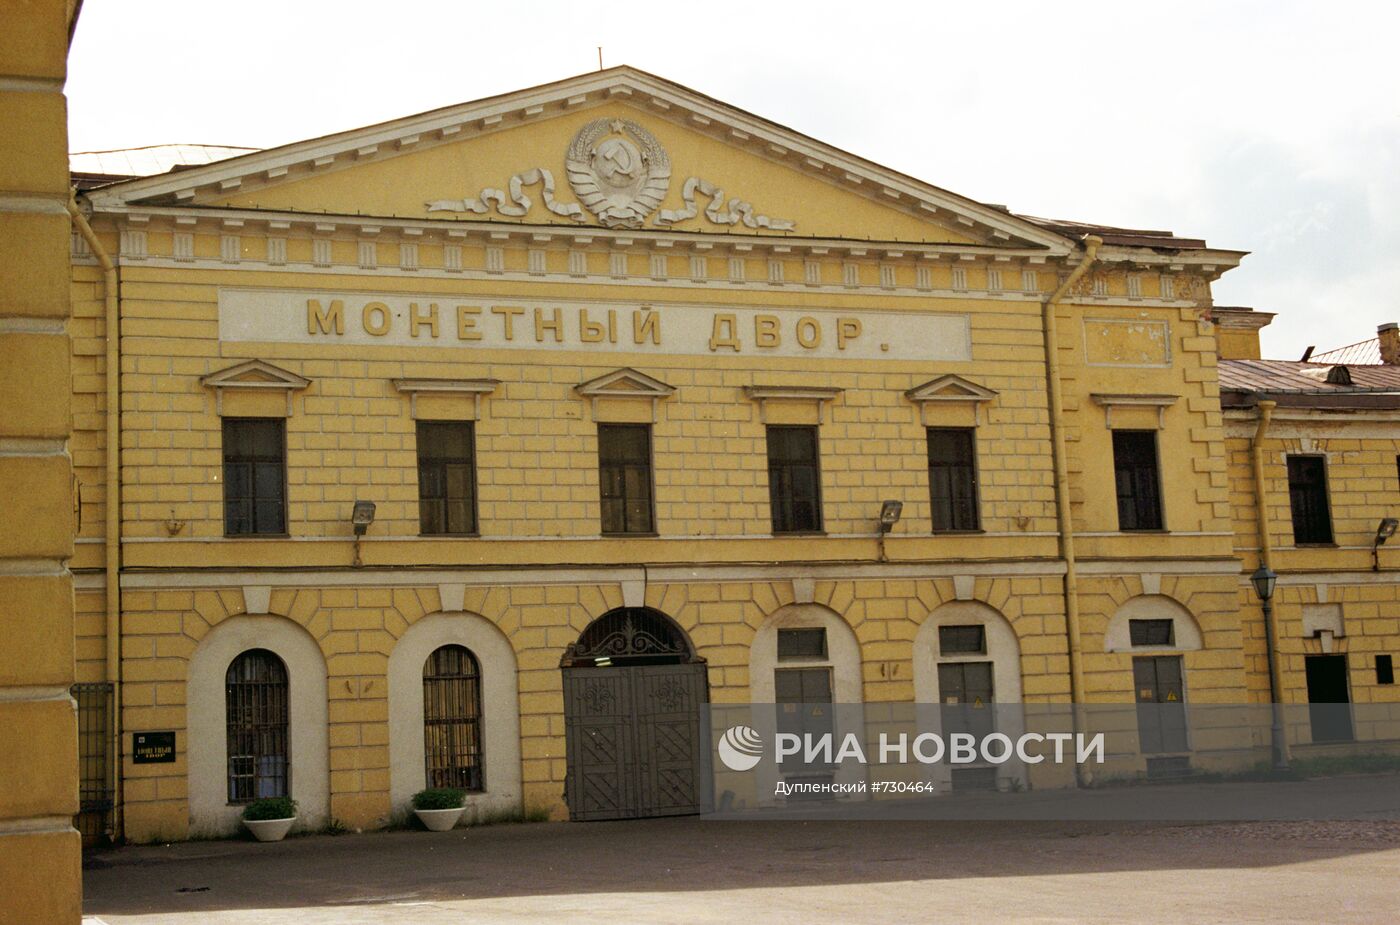 Центральный ризалит здания Монетного двора в Санкт-Петербурге